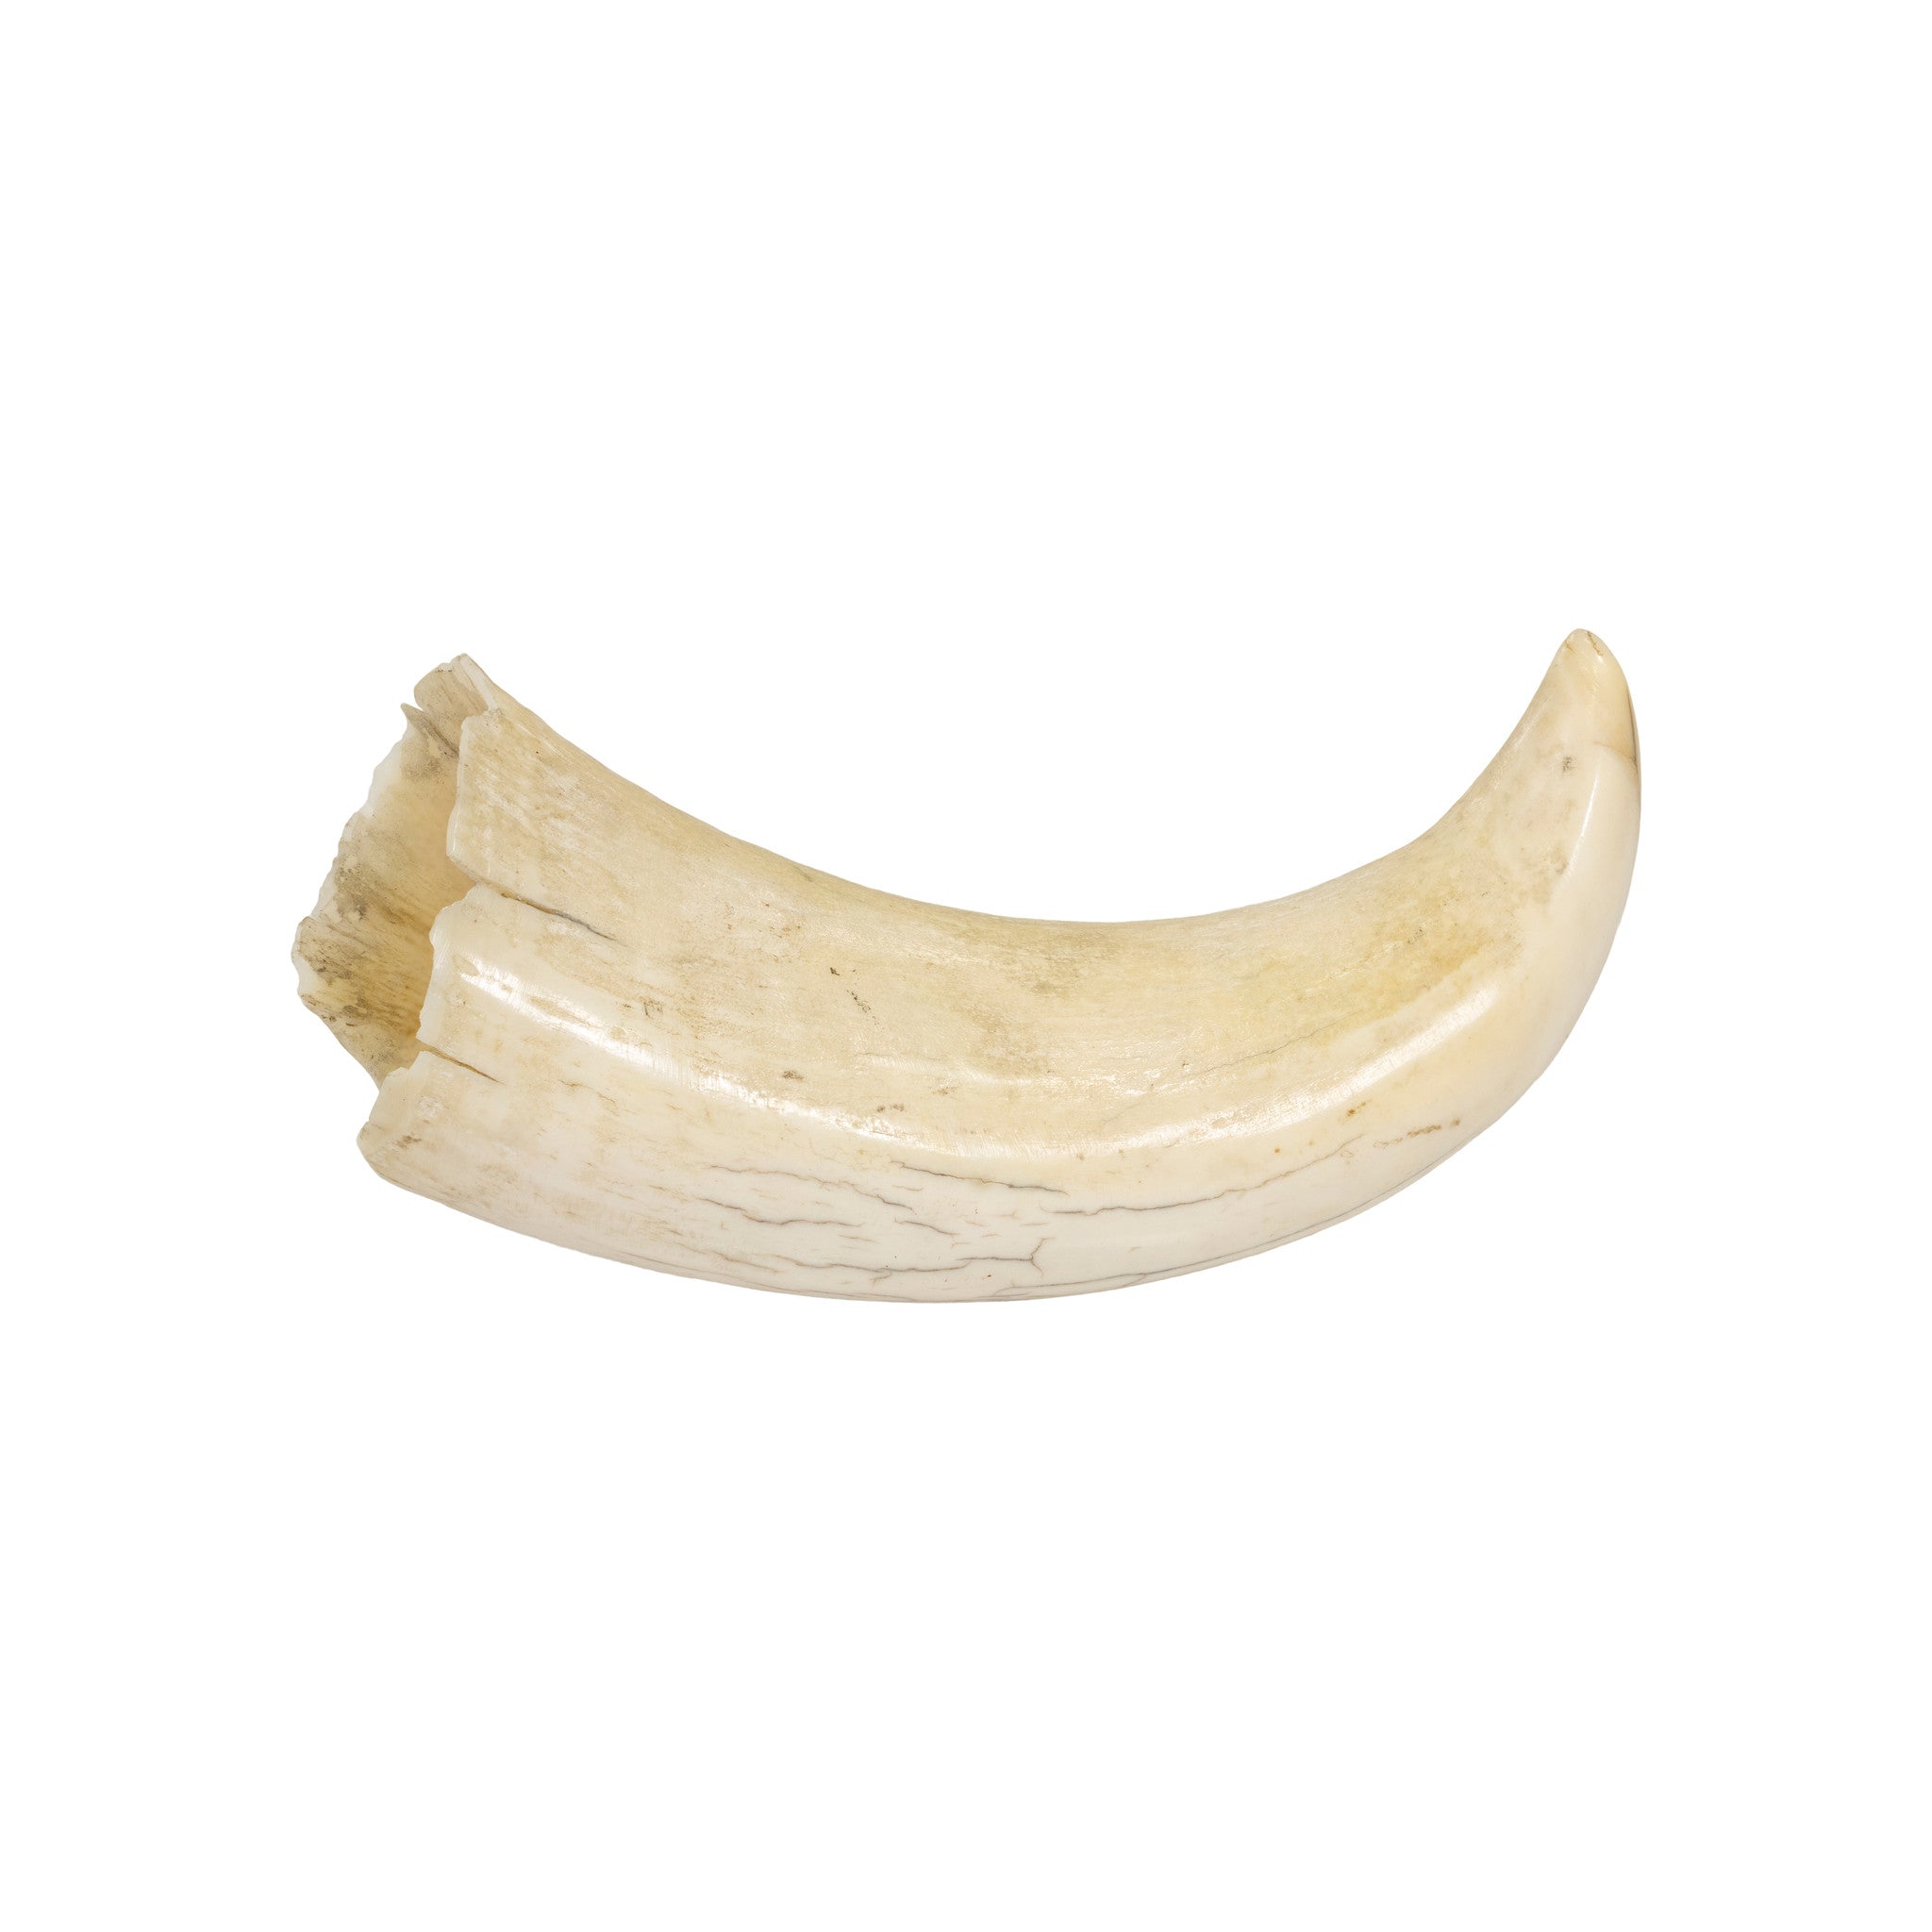 Scrimshawed Sperm Whale Tooth